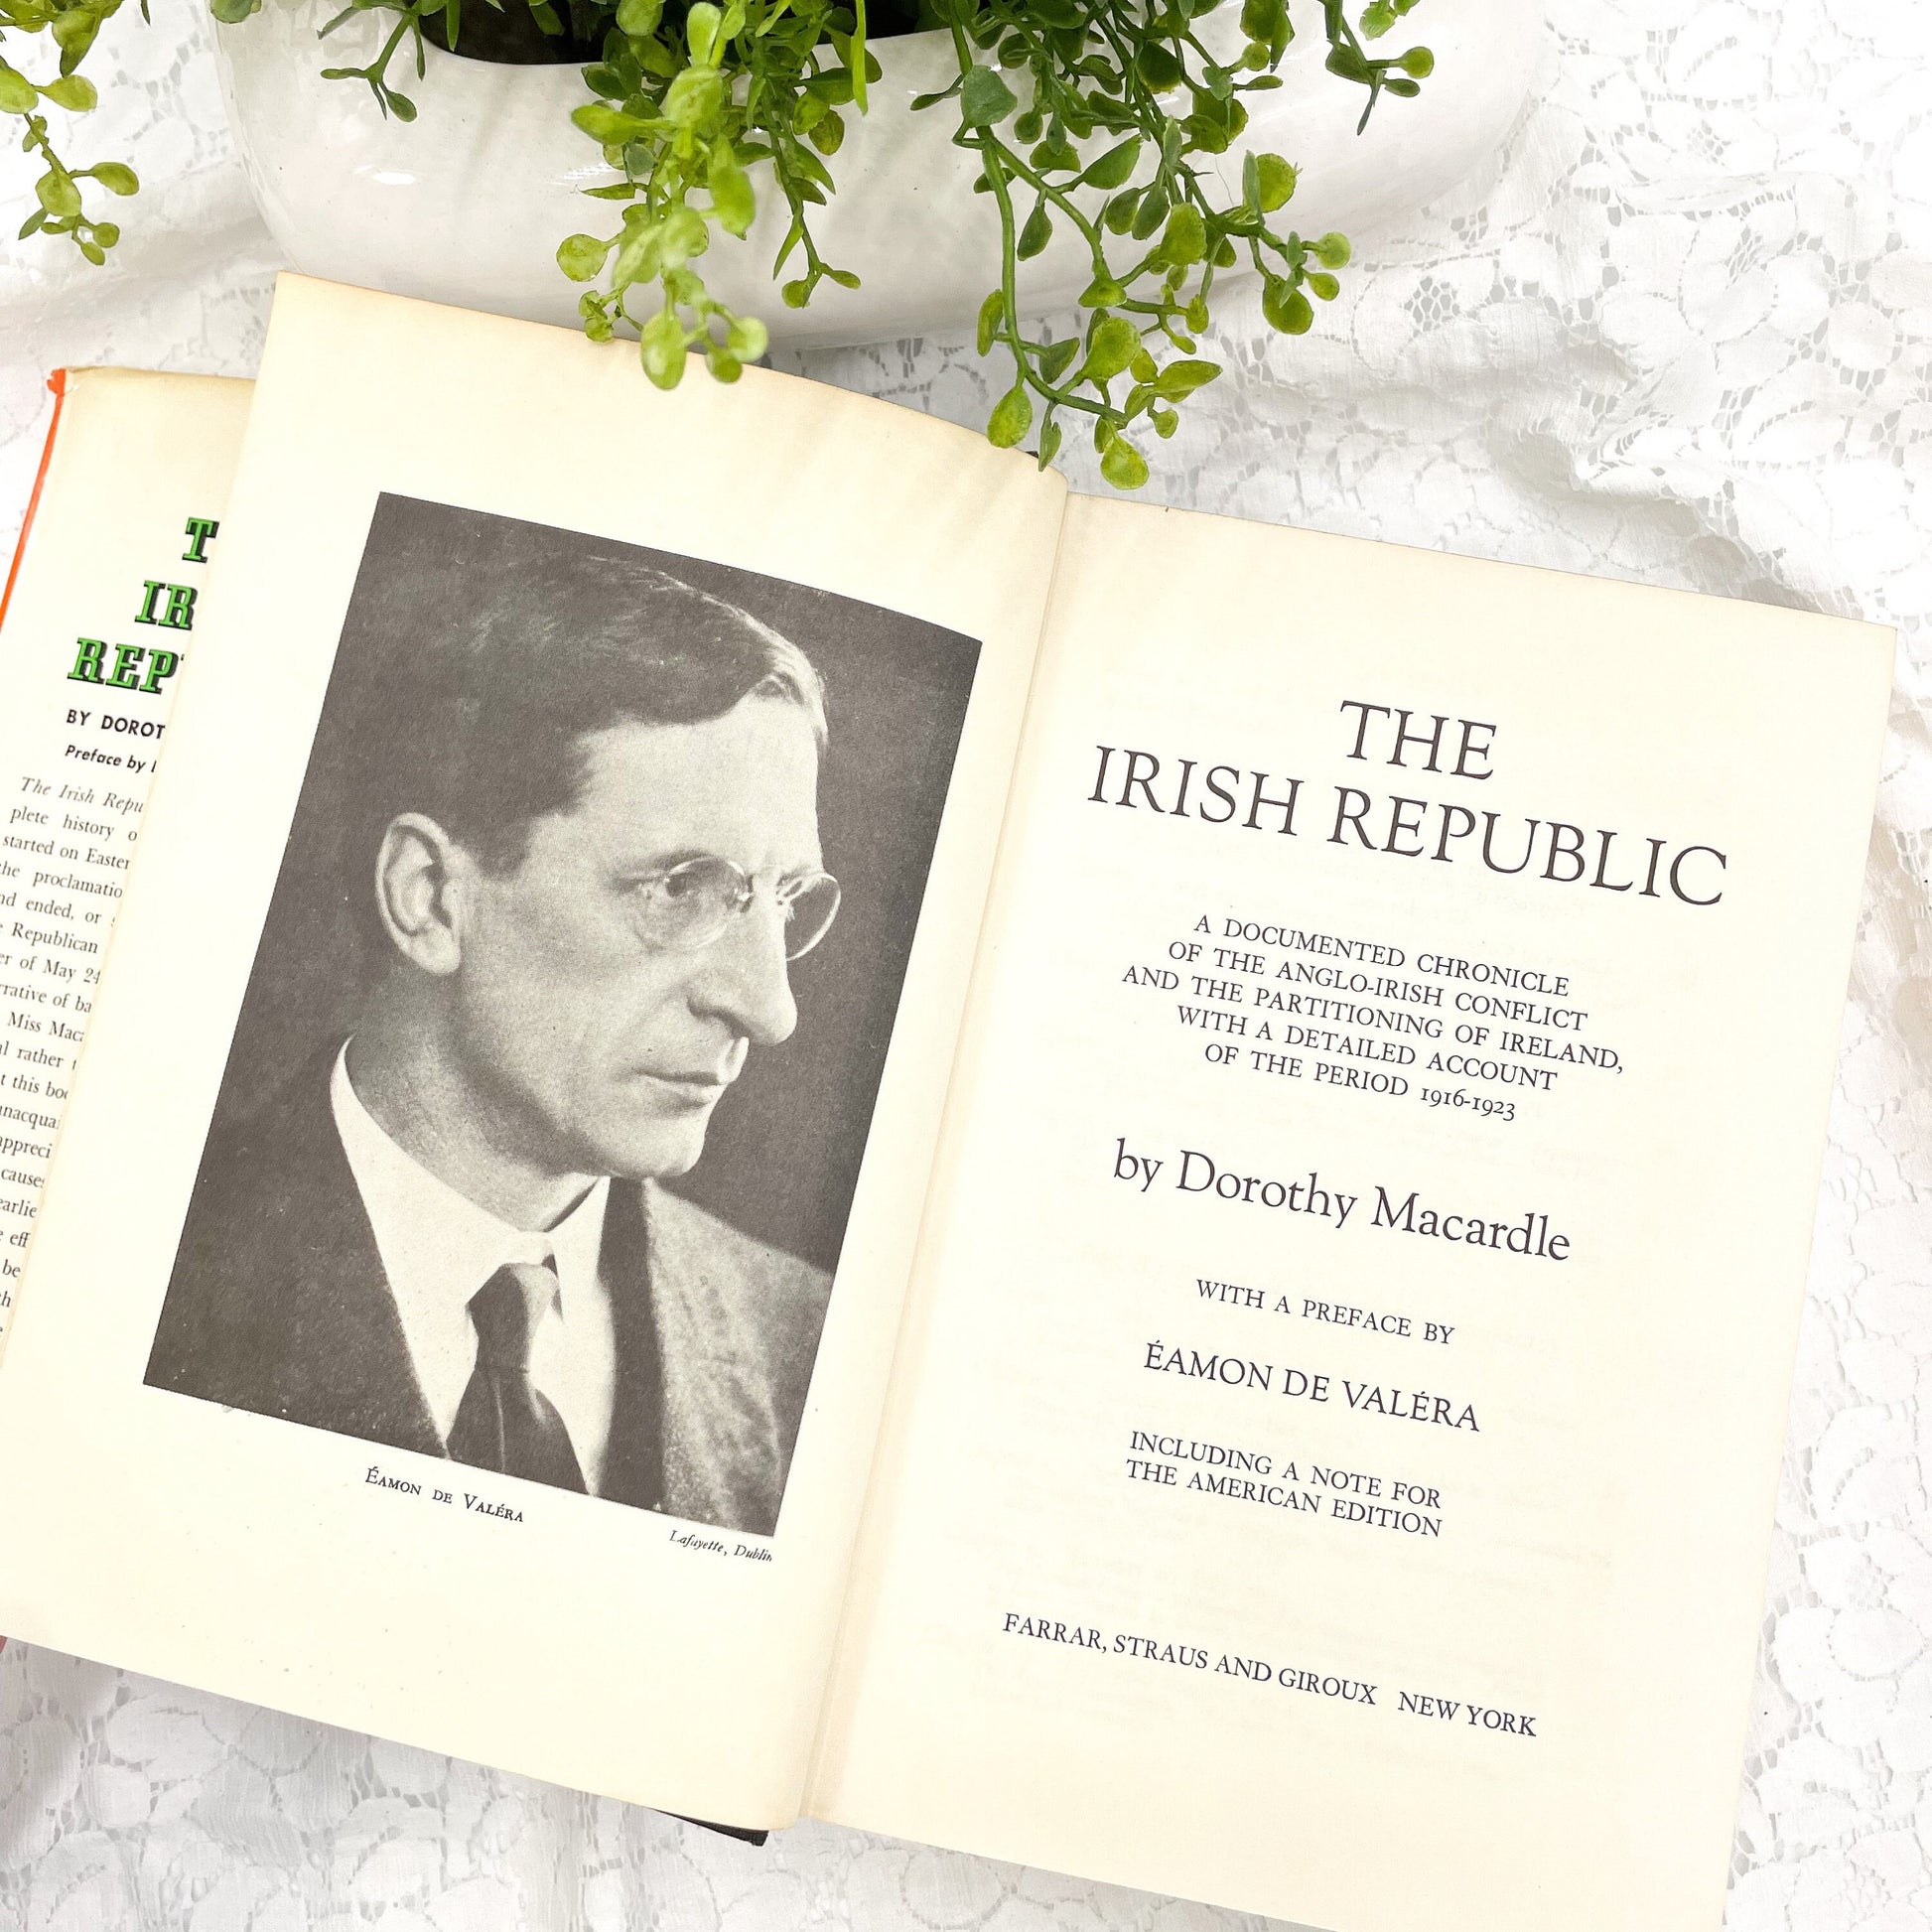 The Irish Republic